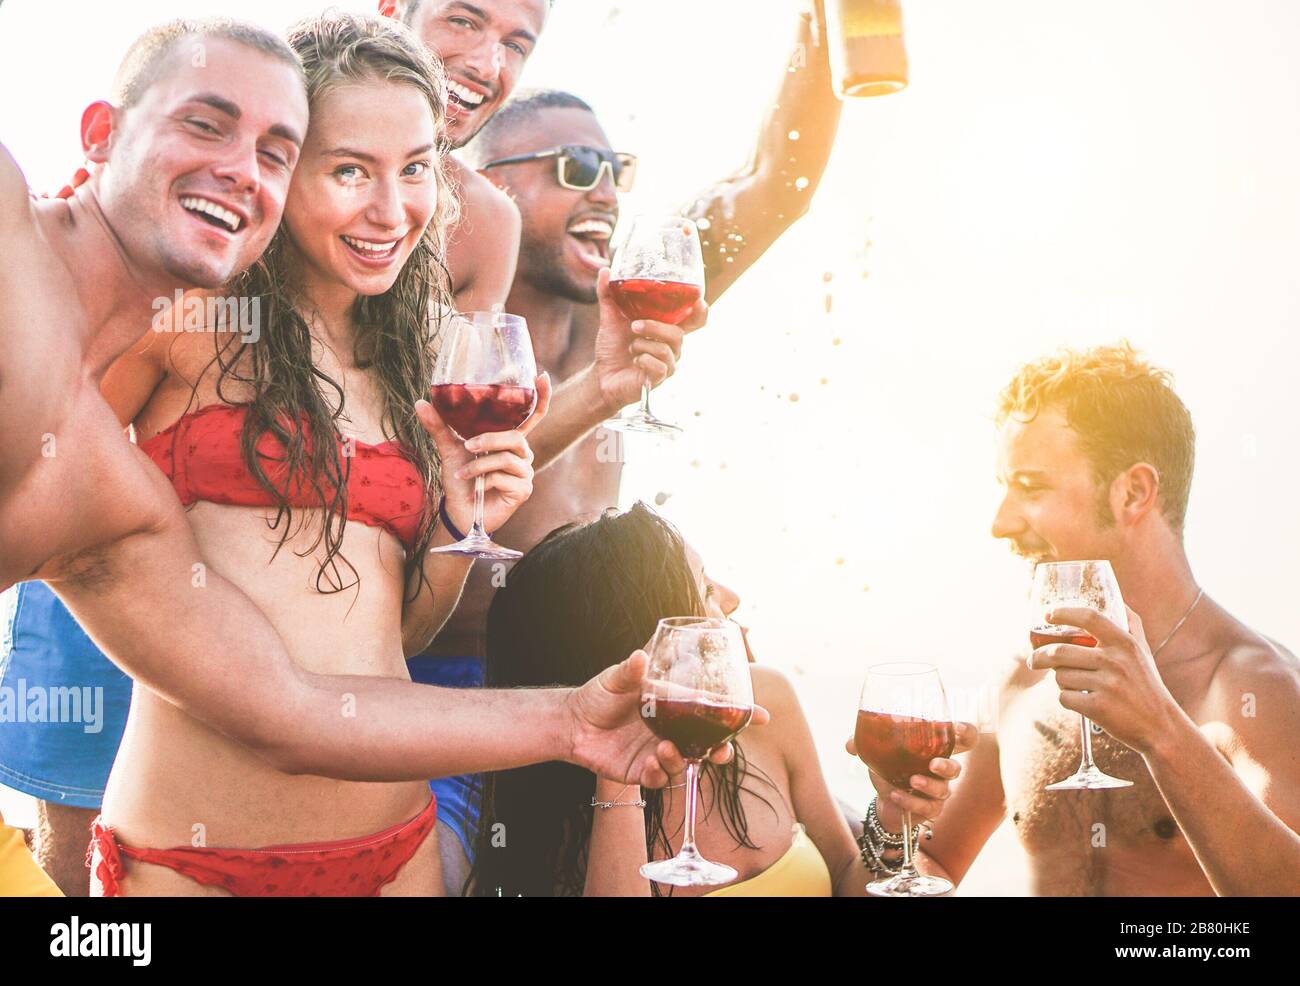 Fröhliche Freunde machen Bootsfeier im Freien mit Sangria und Champagner - junge Leute toben Eiswein und feiern Sommerferien - Freundschaftskonce Stockfoto